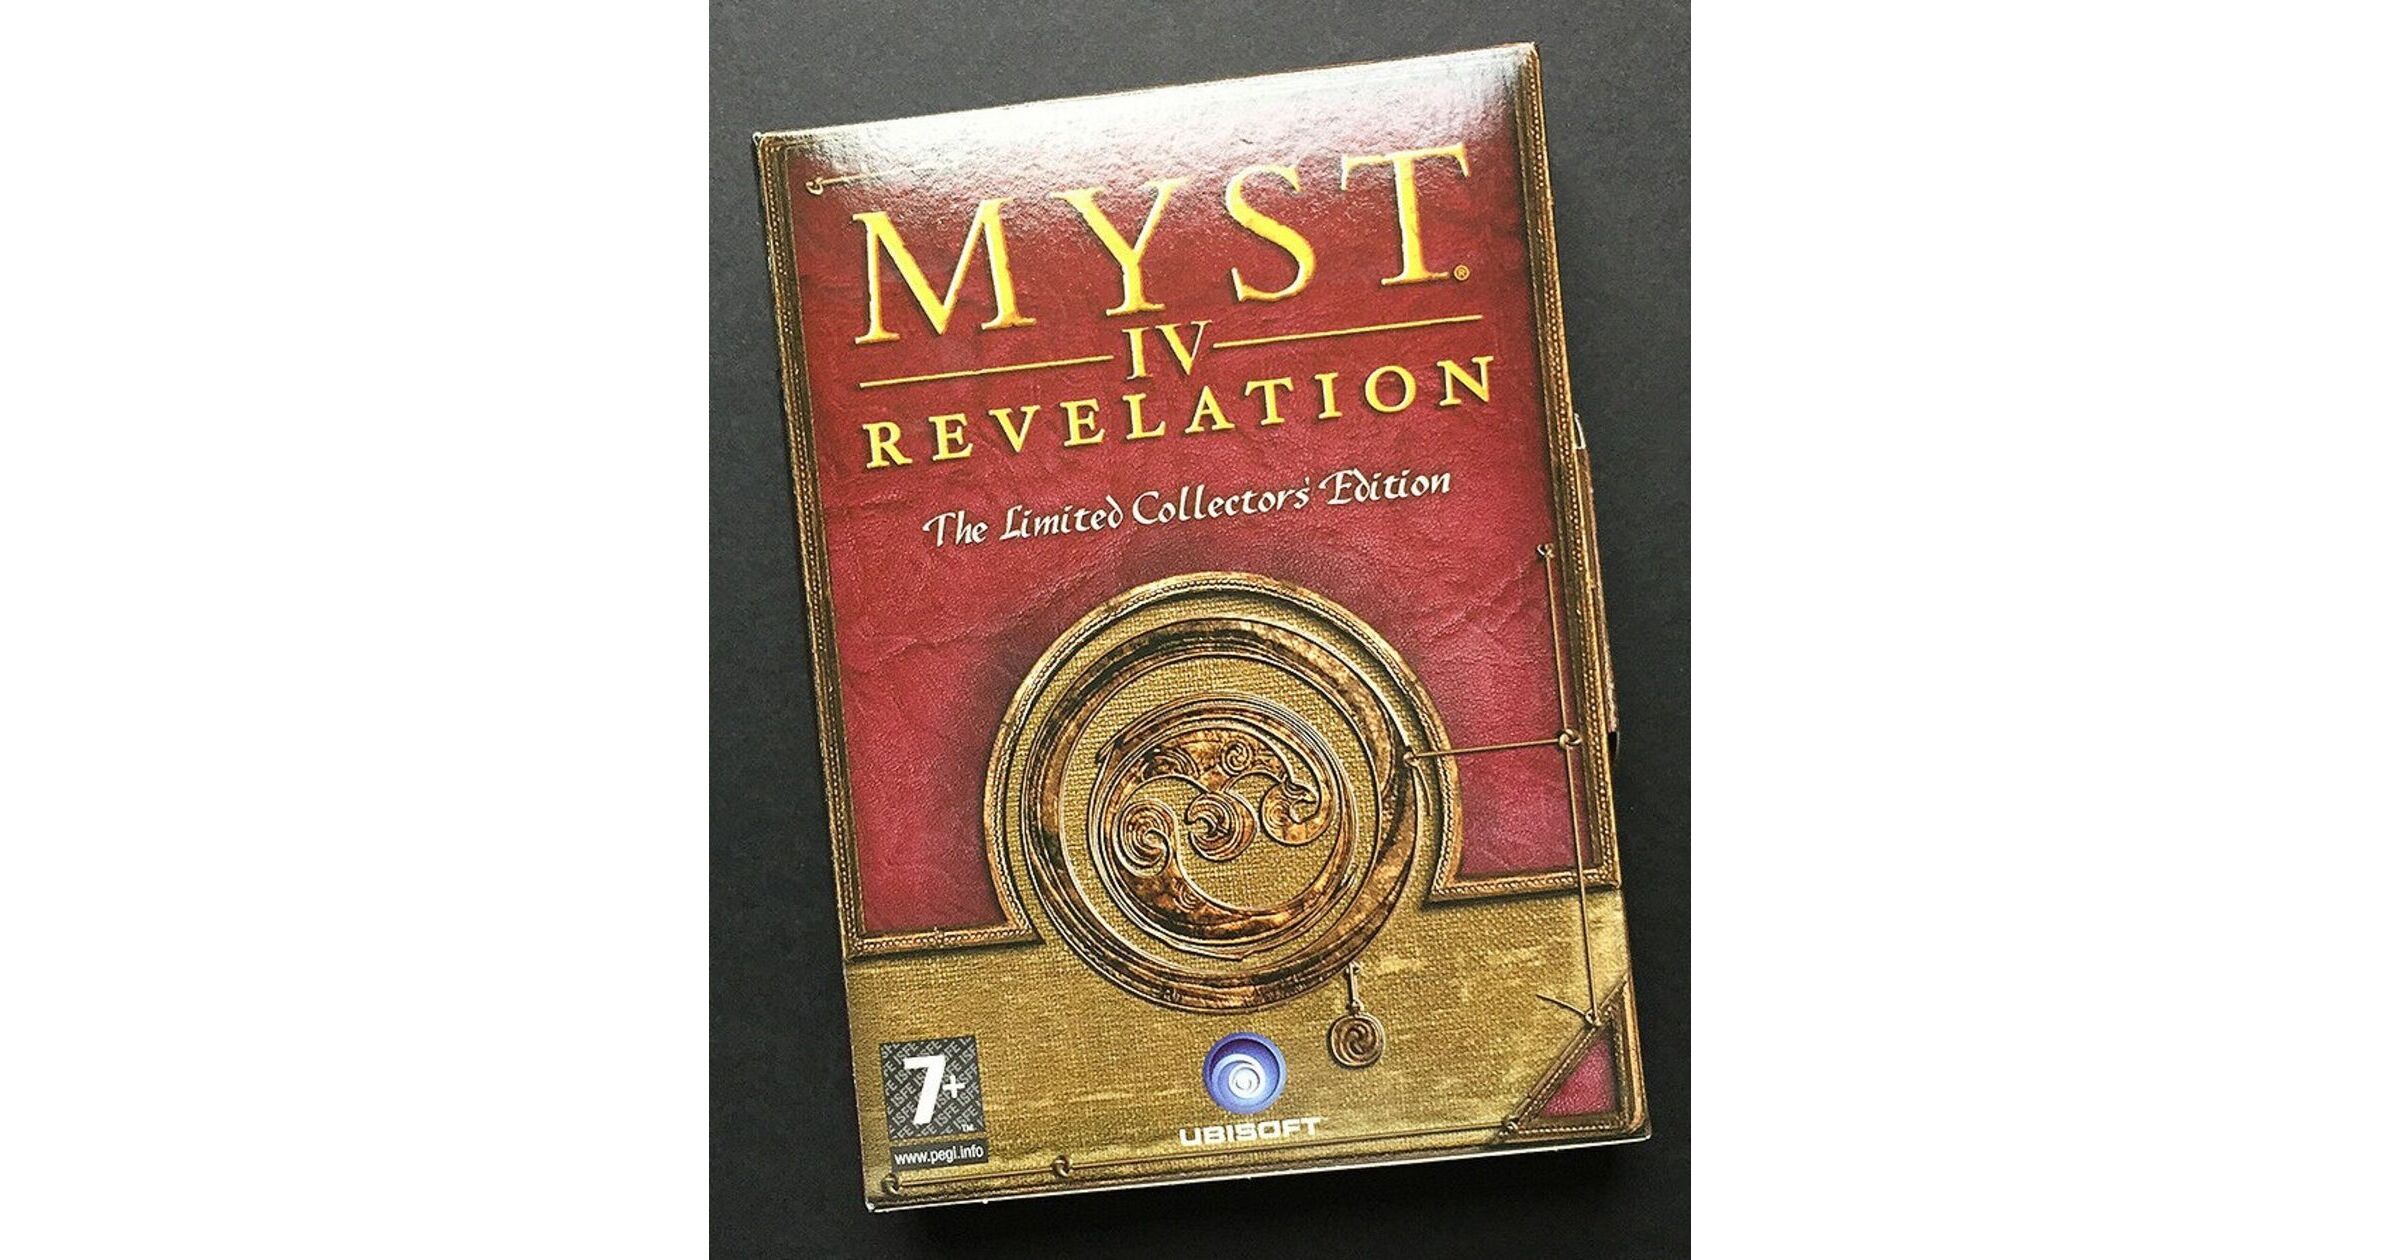 myst iv revelation language packs